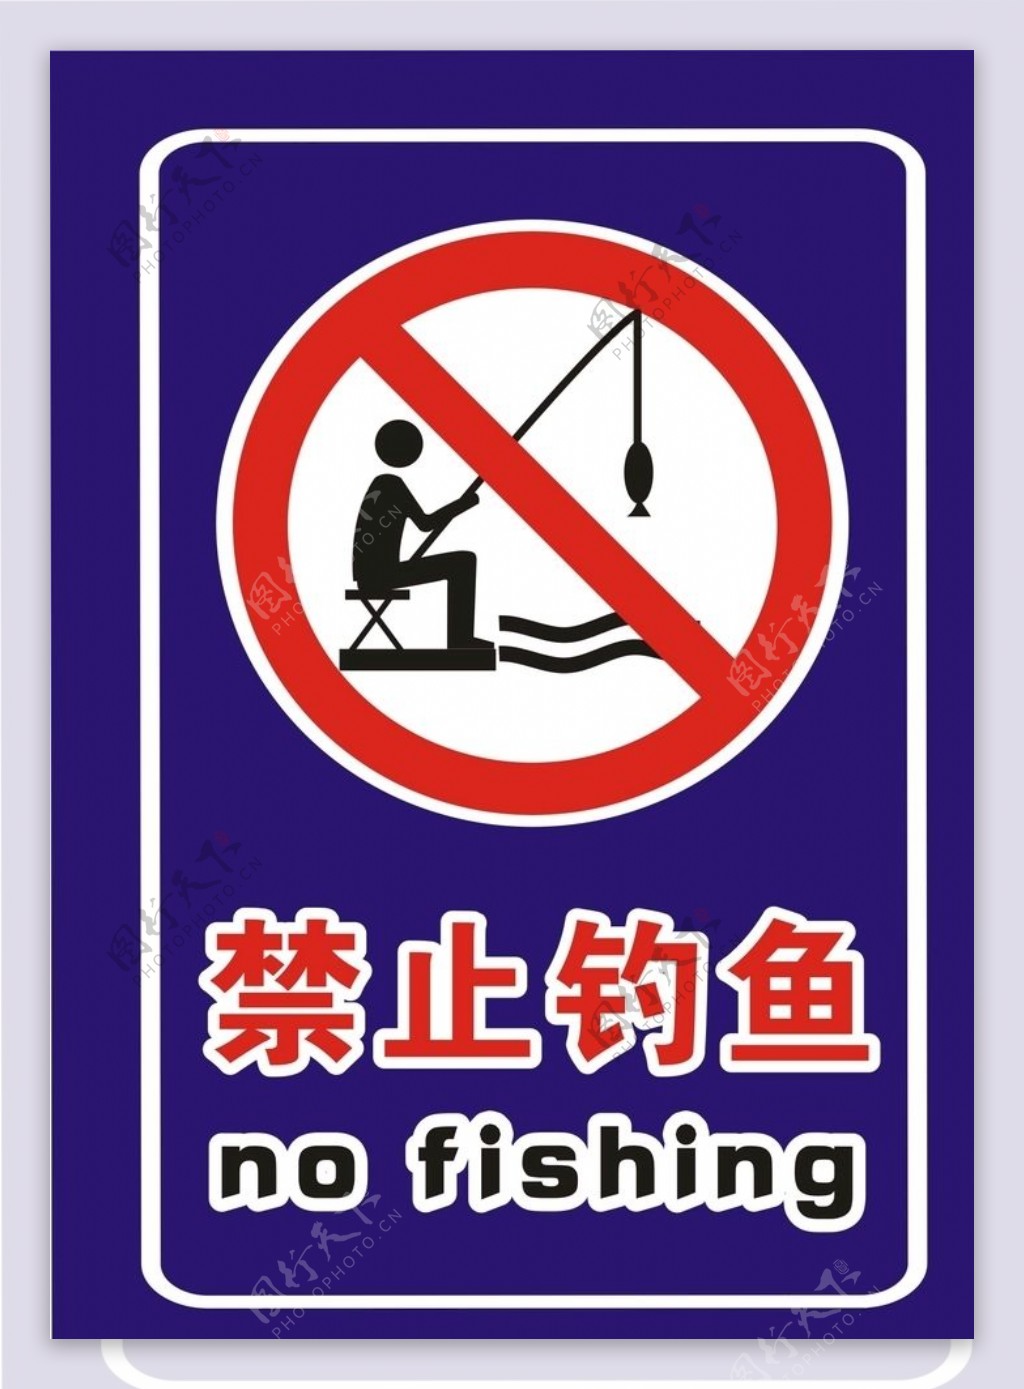 禁止钓鱼竖版